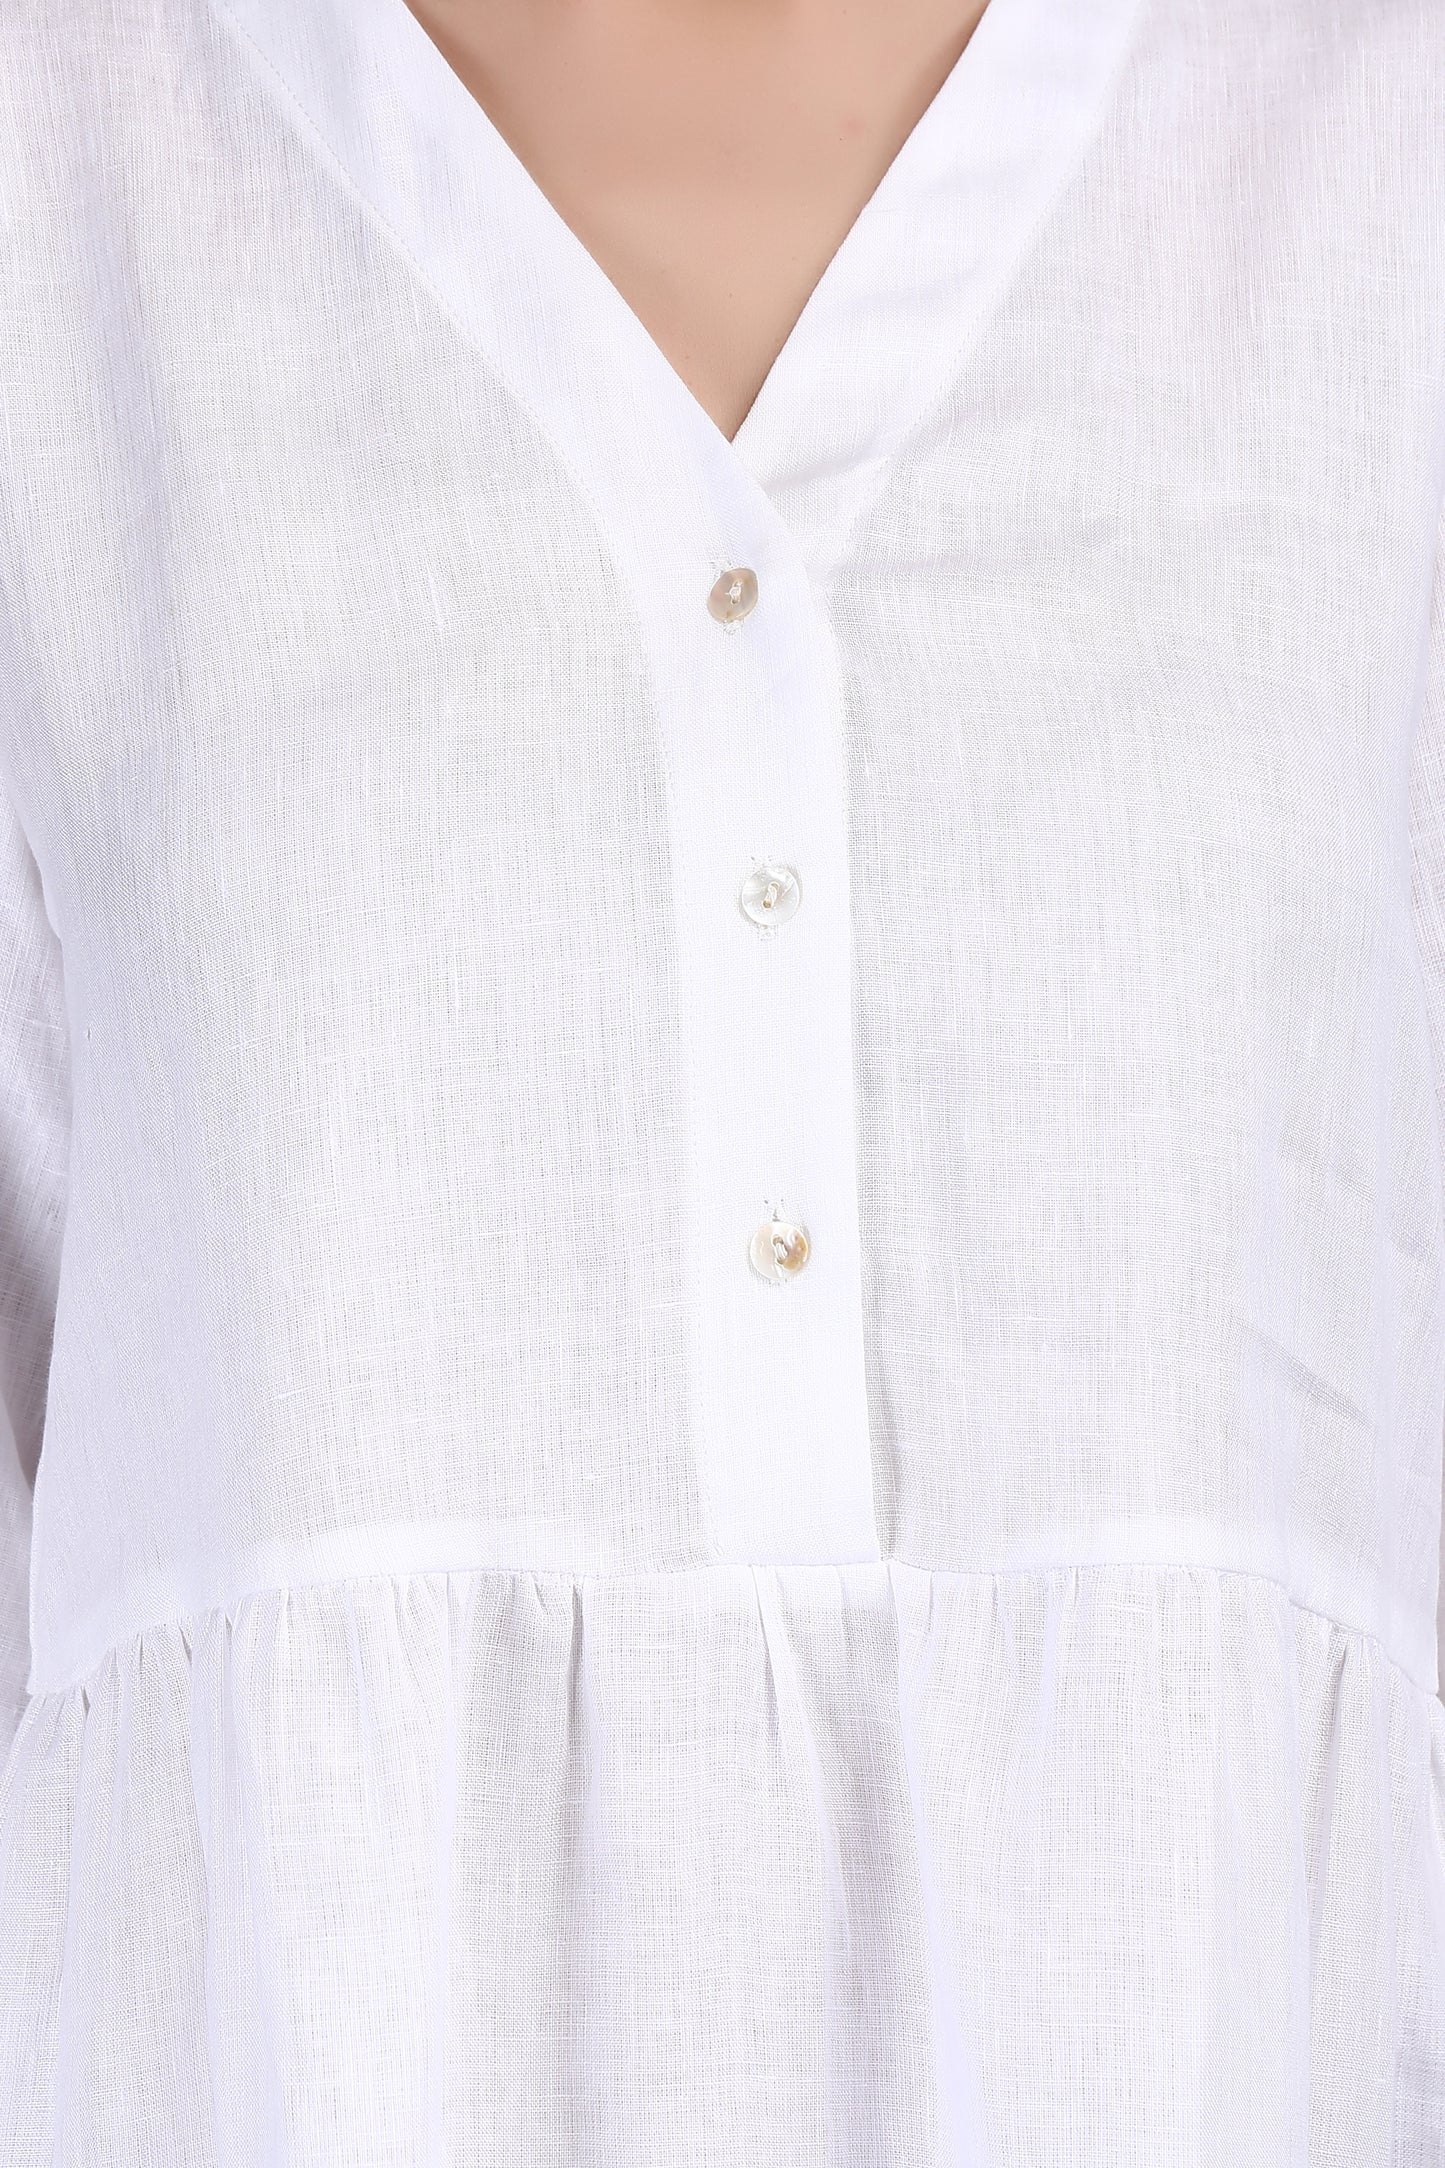 Strasbourg White Linen Flared Mini Dress